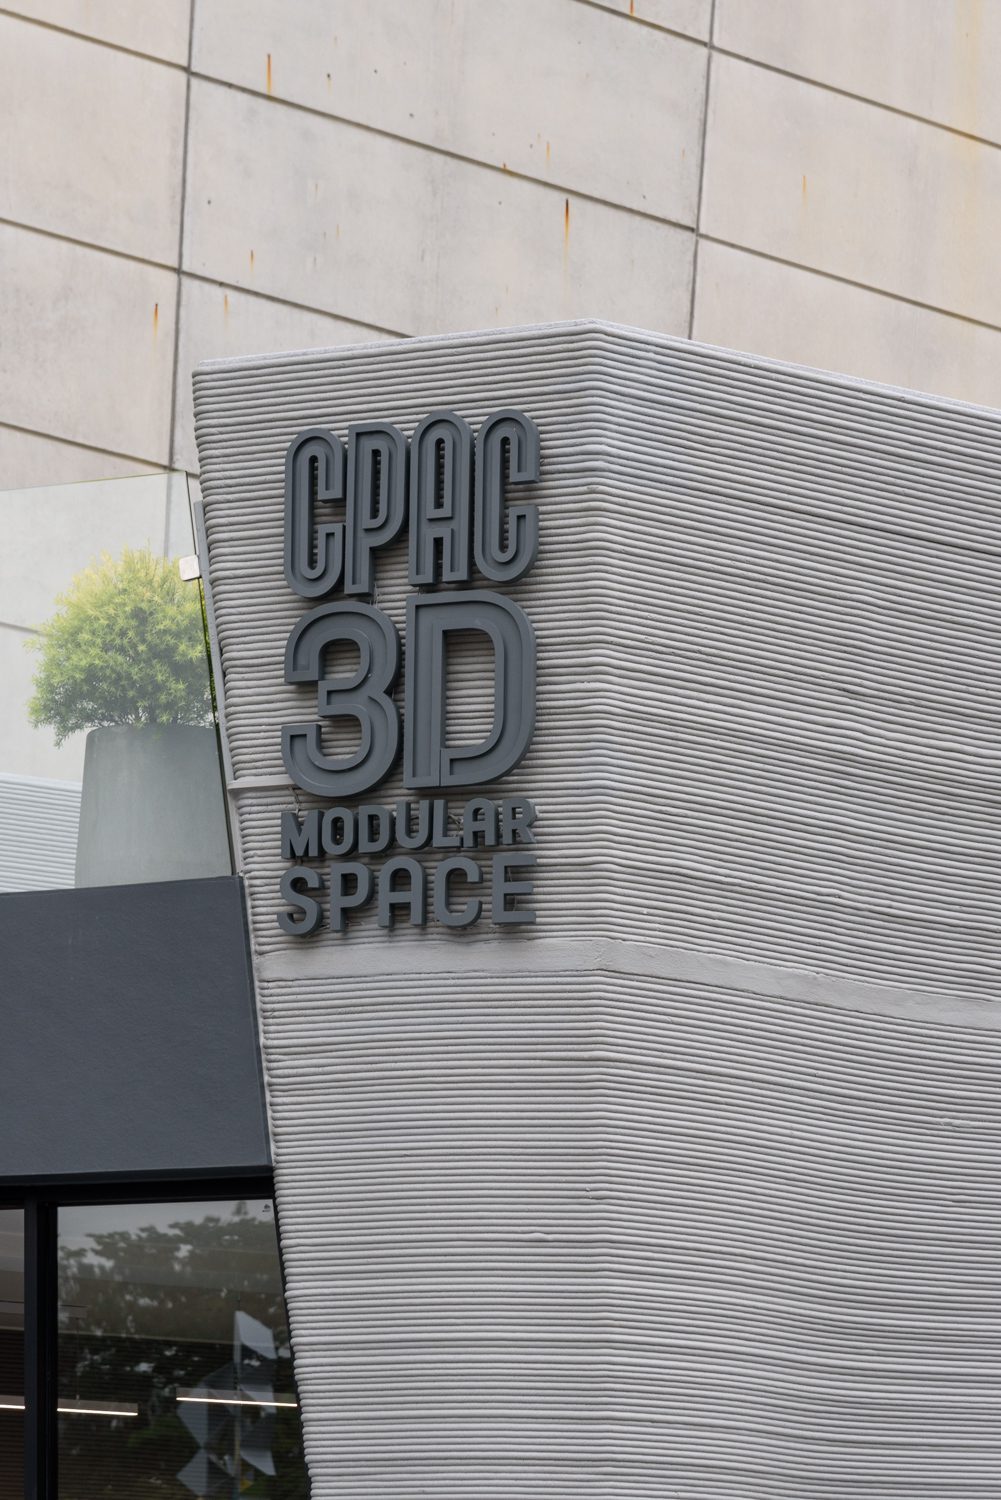 CPAC 3D MODULAR SPACE